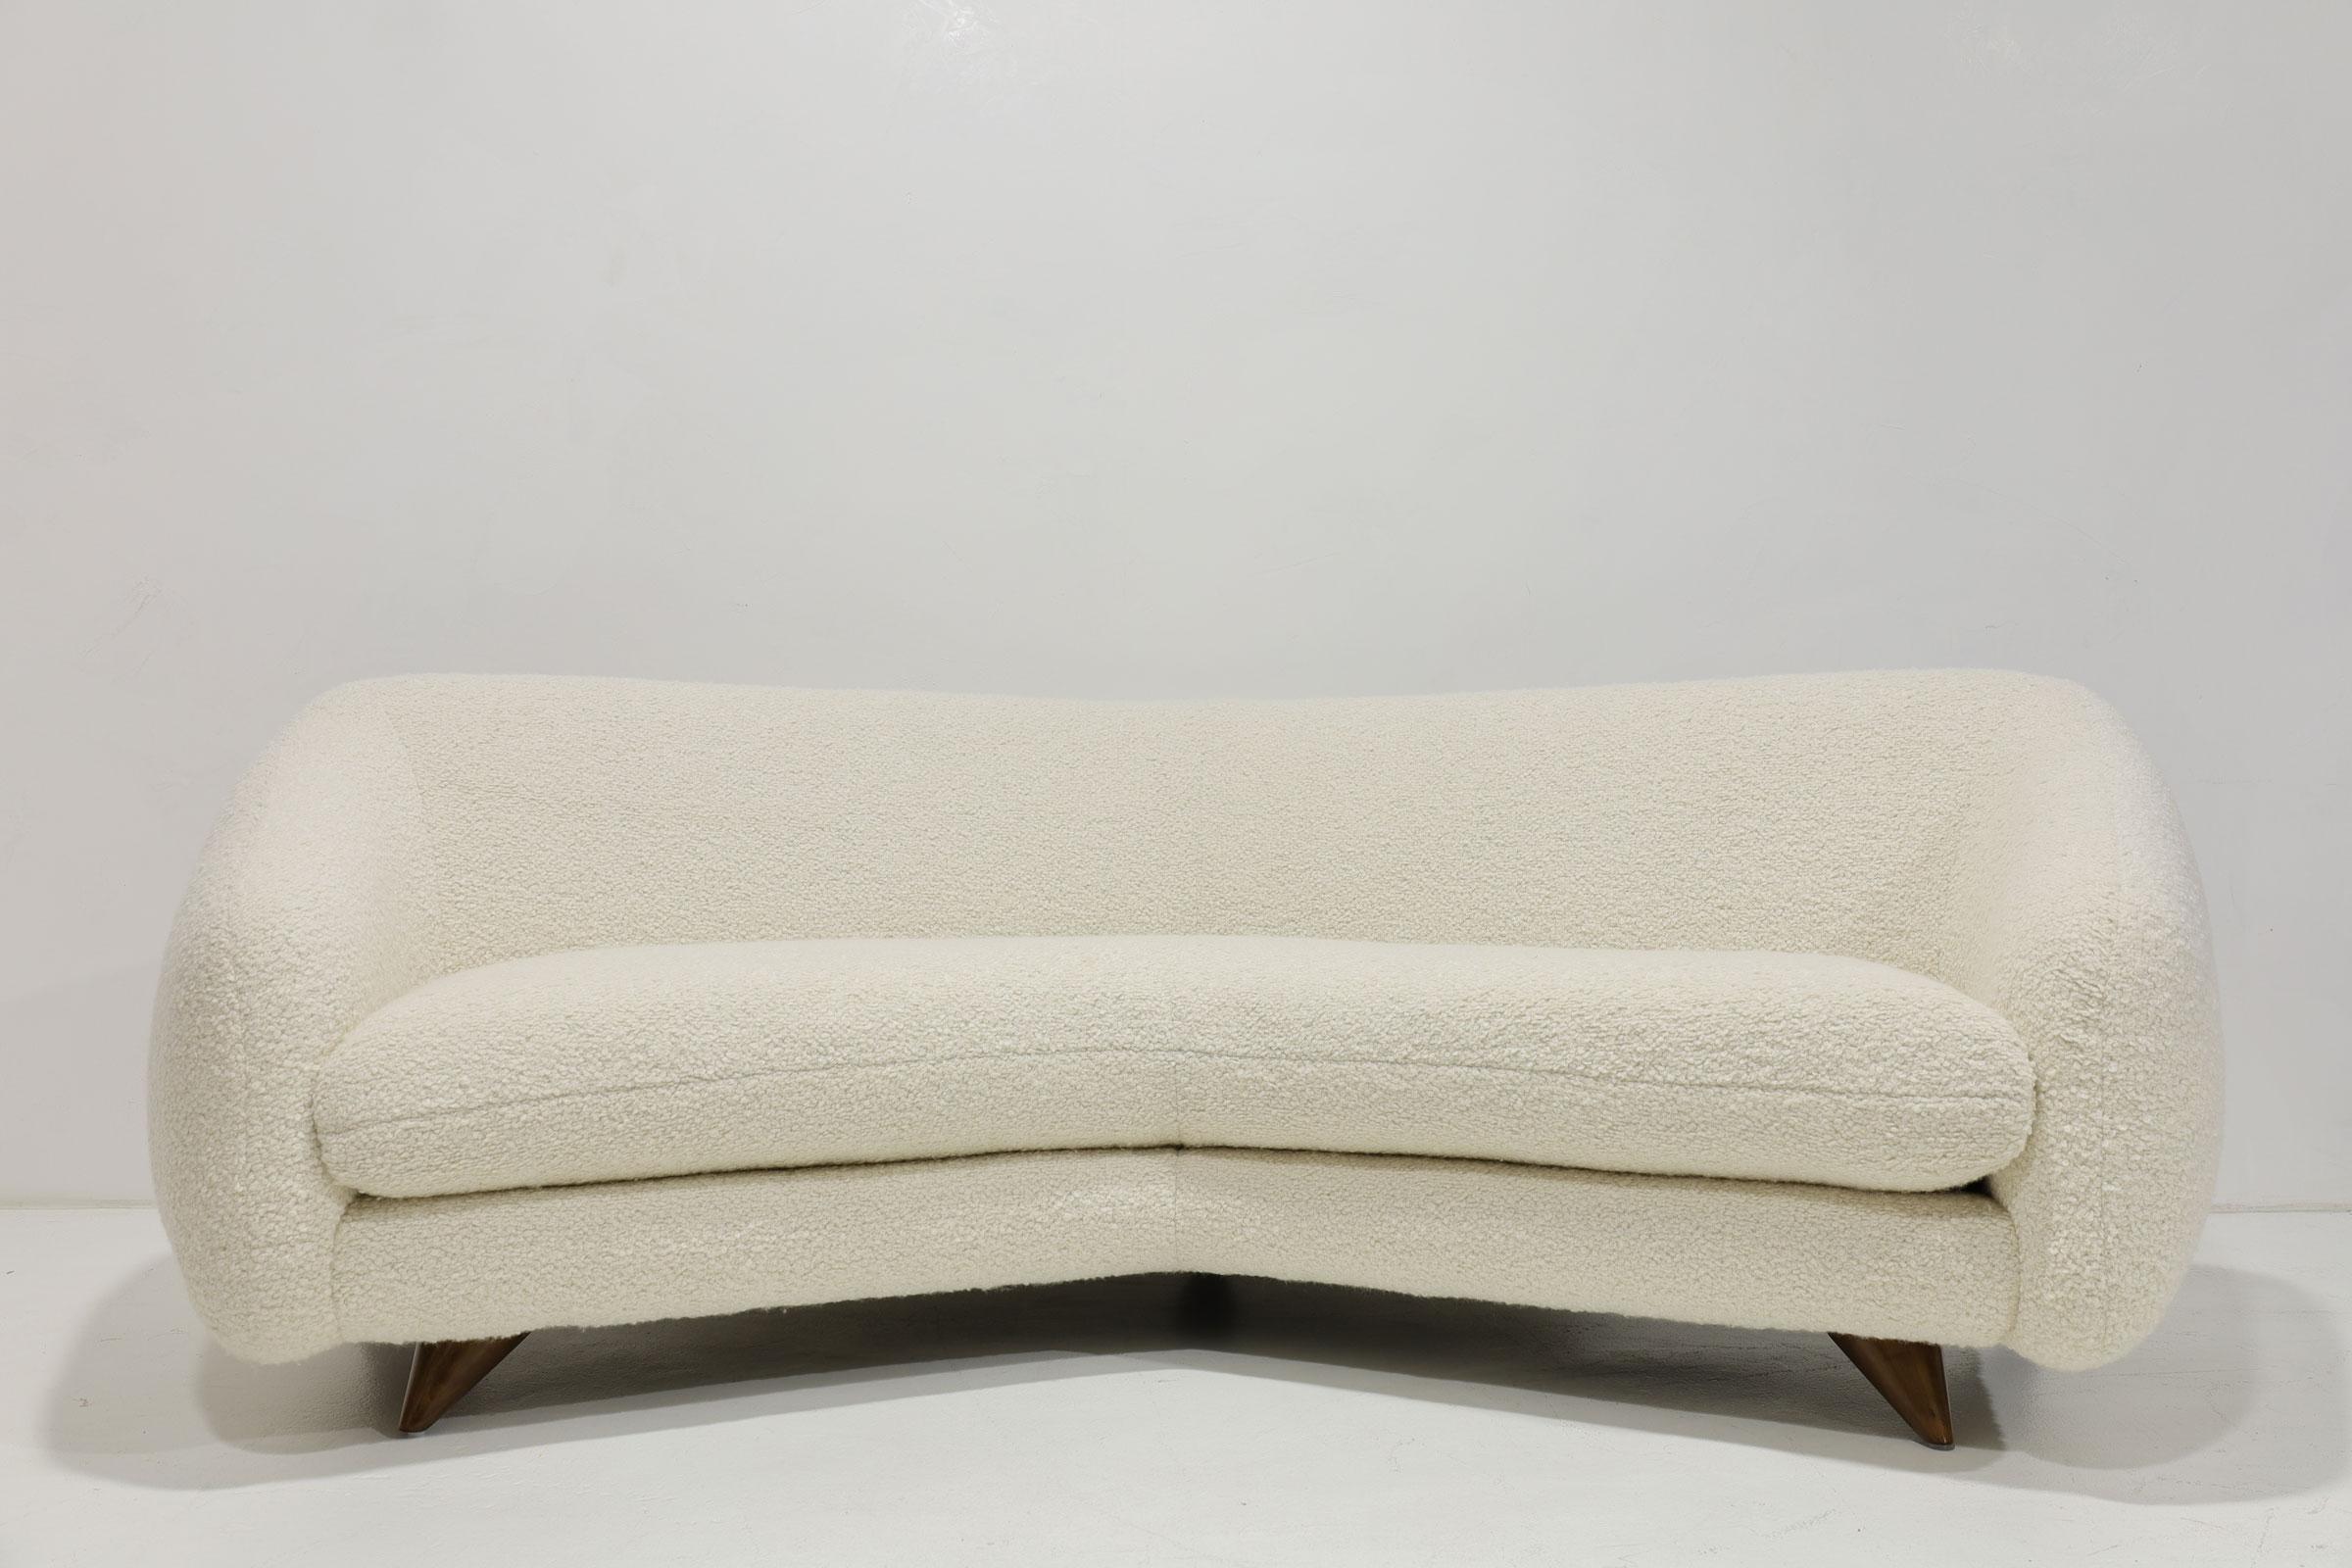 Un magnifique et confortable canapé réalisé par Vladimir Kagan pour Kagan-Dreyfuss. Parfois appelé canapé grand angle ou canapé Tangent. Nous en avons une paire et nous l'avons retapissé en HOLLY HUNT Teddy. Le(s) canapé(s) est (sont) magnifique(s).